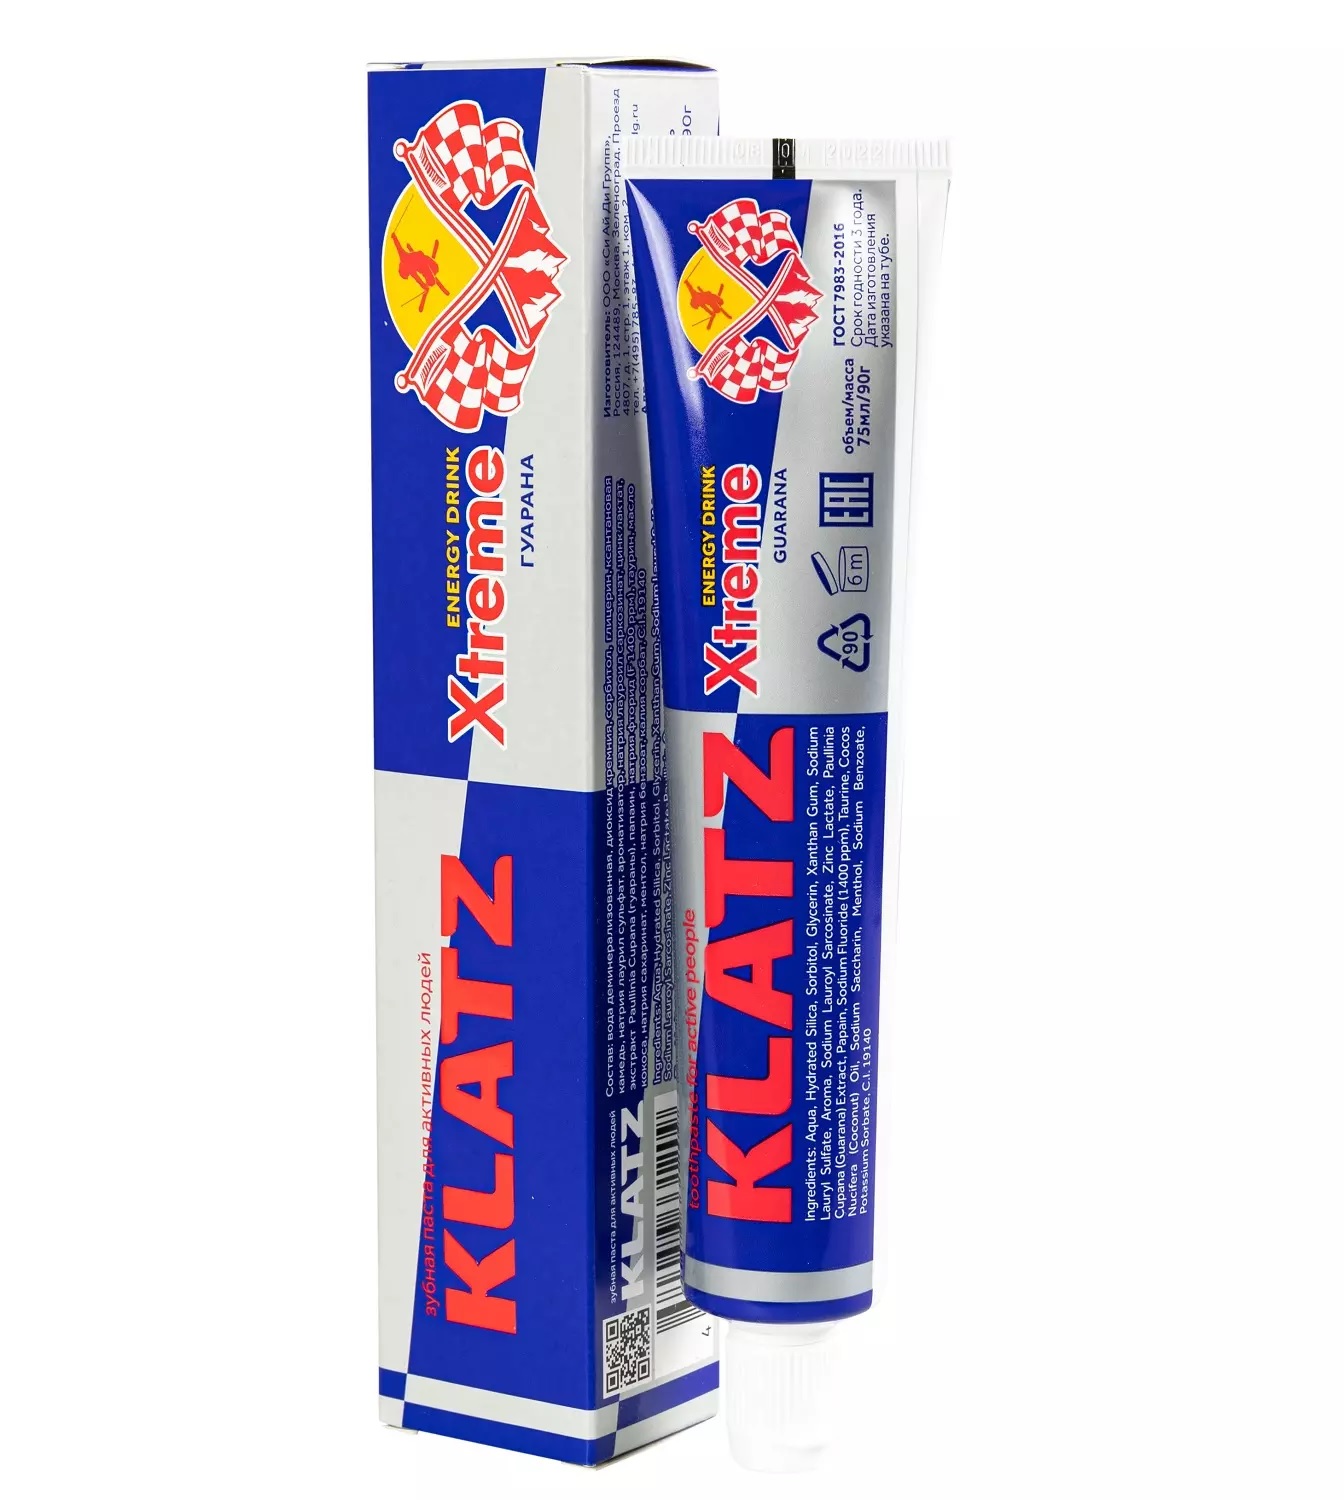 Паста зубная Klatz X-treme Energy Drink для активных людей, гуарана, 75 мл паста зубная klatz x treme energy drink для активных людей гуарана 75 мл